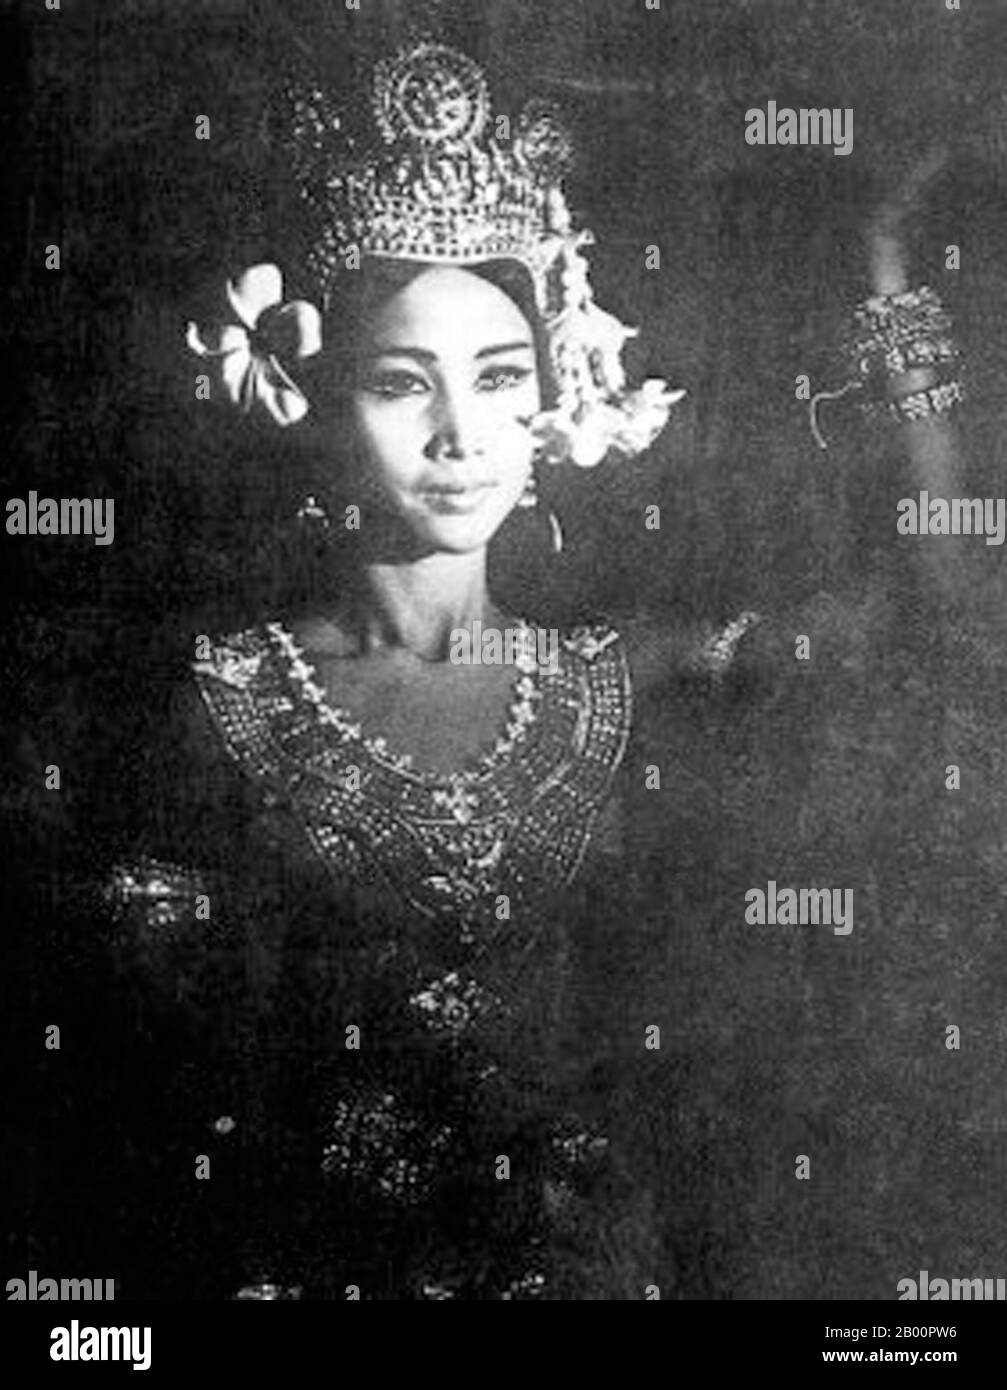 Cambogia: Principessa Norodom Bopha Devi di Cambogia è nata l'8 gennaio 1943 a Phnom Penh. È la figlia di Norodom Sihanouk e del defunto Neak Moneang Phat Kanthol. La principessa Bopha Devi è la sorella maggiore del principe Norodom Ranariddh e un fratello minore dell'attuale re di Cambogia, Norodom Sihamoni. Il suo titolo ufficiale è sua altezza reale Samdech Reach Botrei Preah Ream Norodom Bopha Devi. È principalmente conosciuta come prima ballerina del Balletto reale cambogiano e come il suo salvatore dopo che i Khmer Rossi tentarono di distruggere la forma d'arte (1975-79). Foto Stock